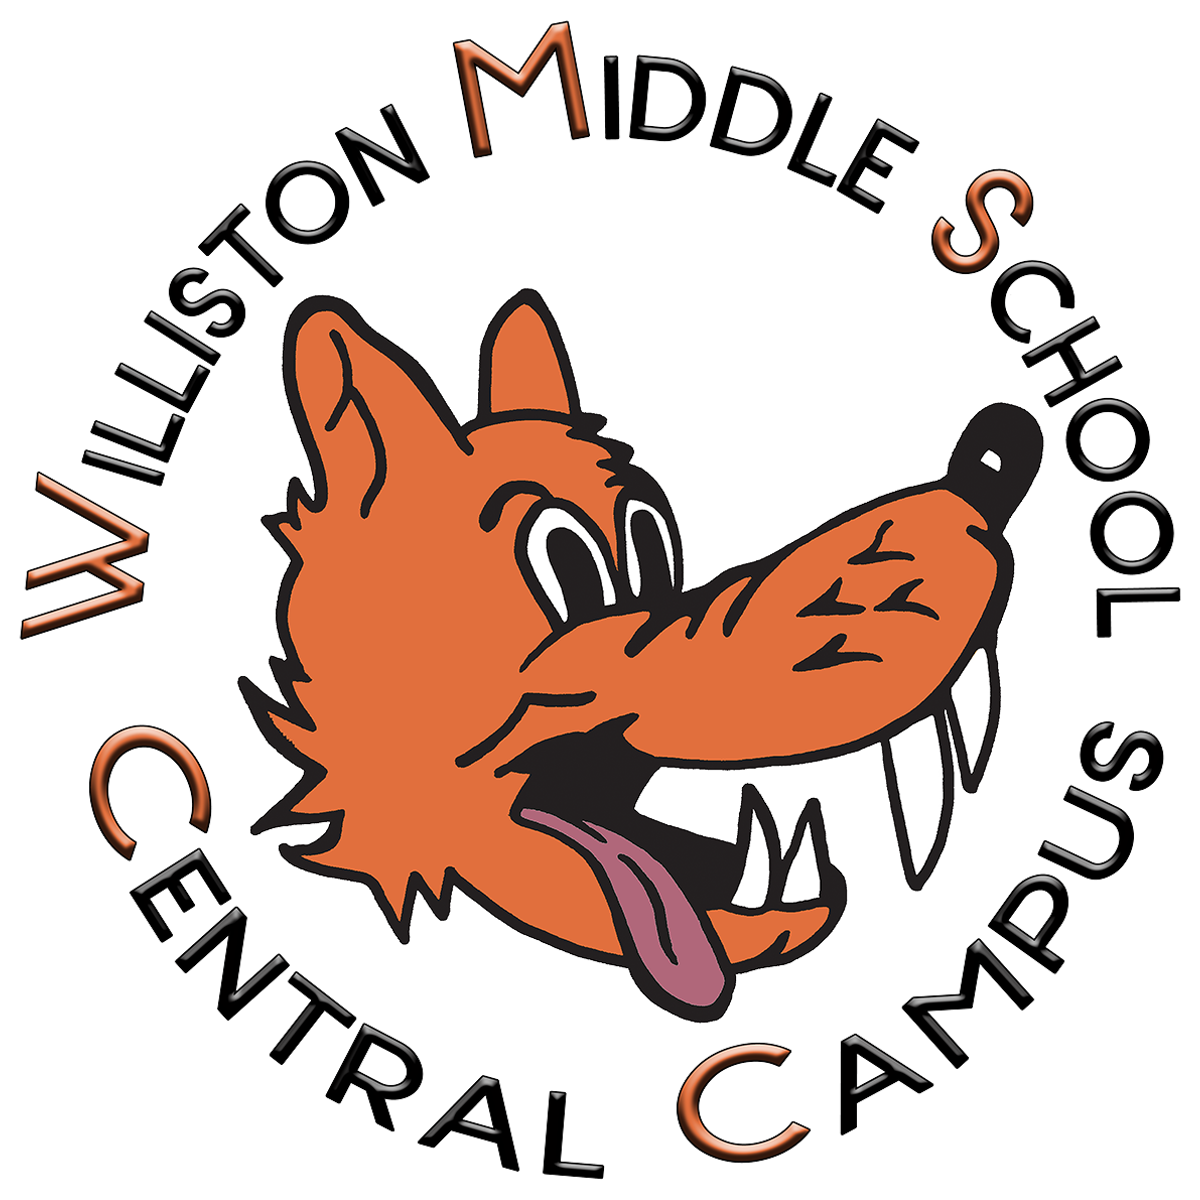 Williston Middle School